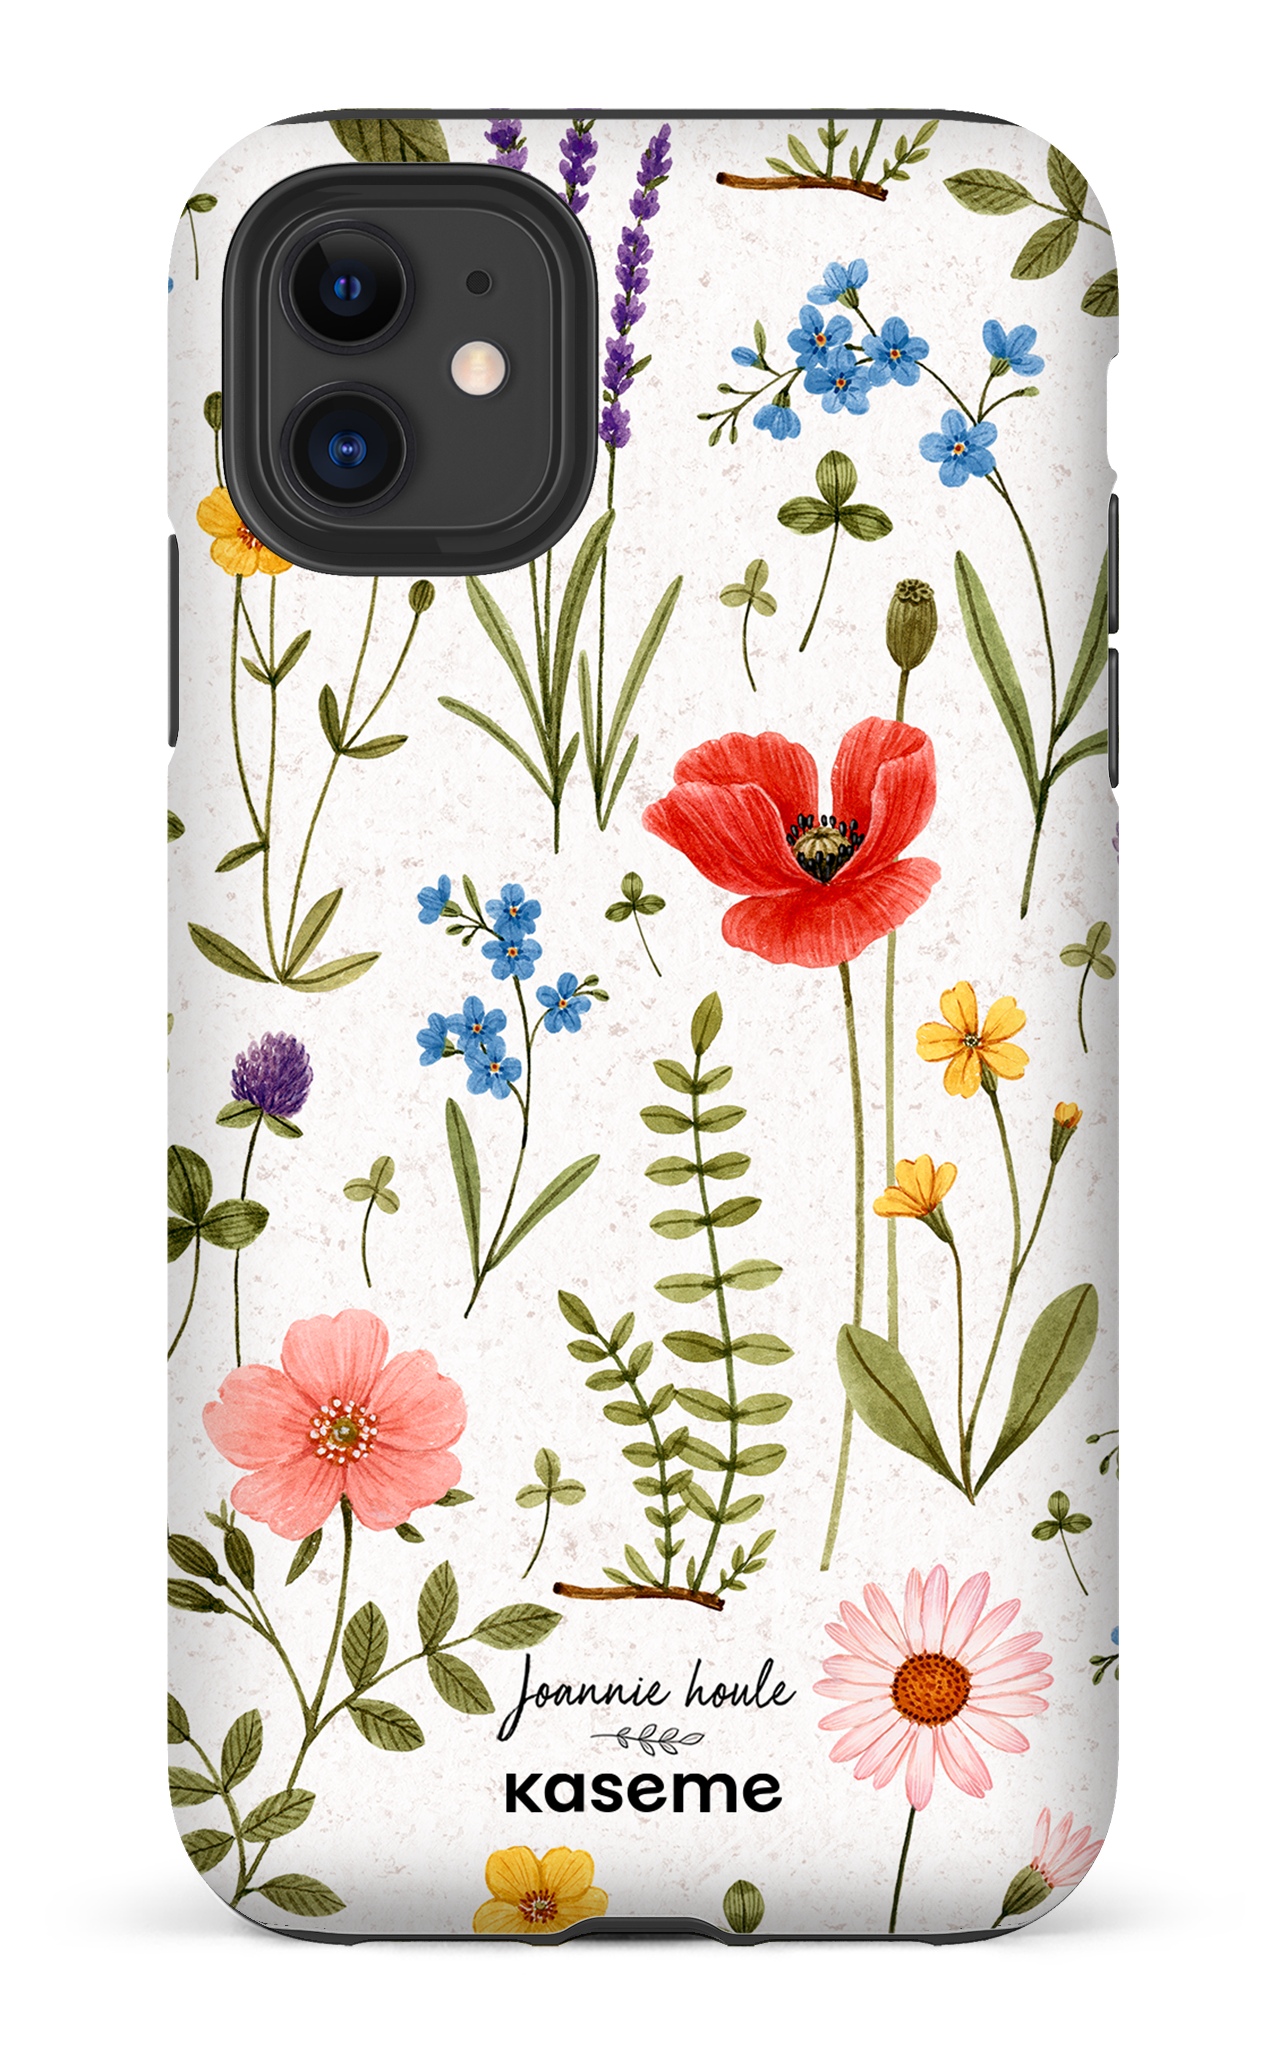 Wild Flowers by Joannie Houle - iPhone 11